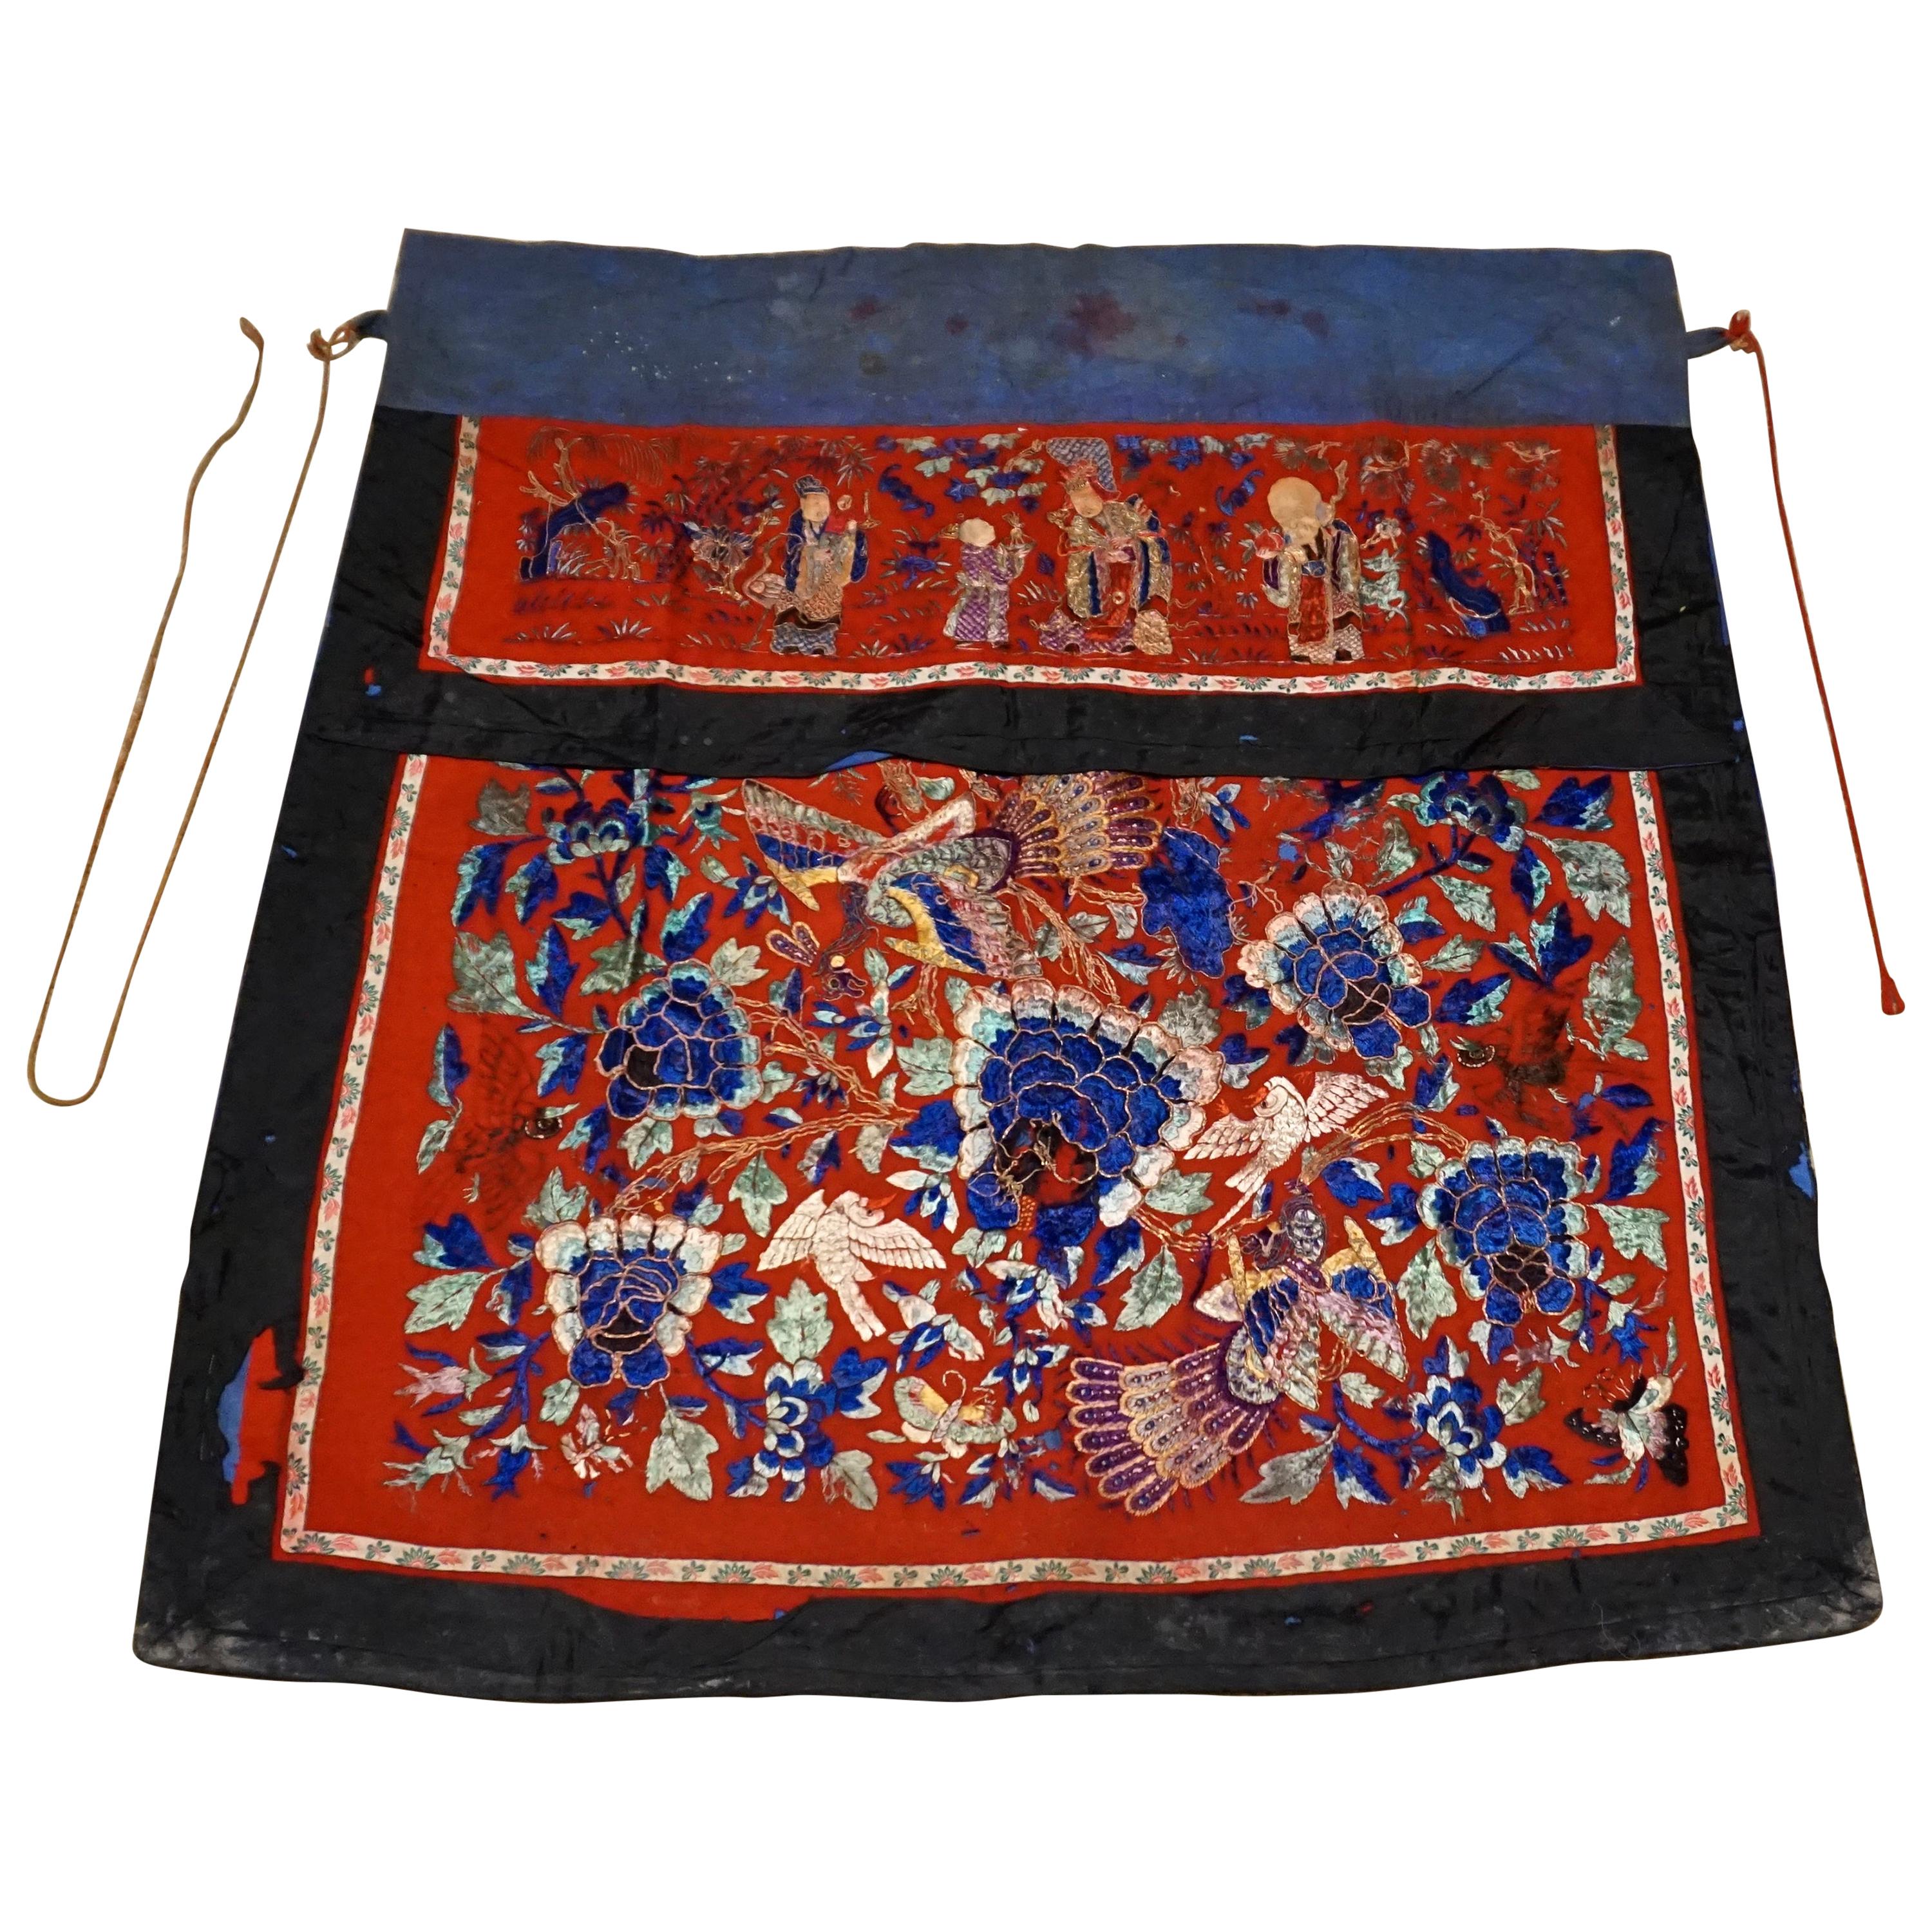 Bannière d'autel en broderie de soie de la dynastie chinoise Qing du 19e siècle